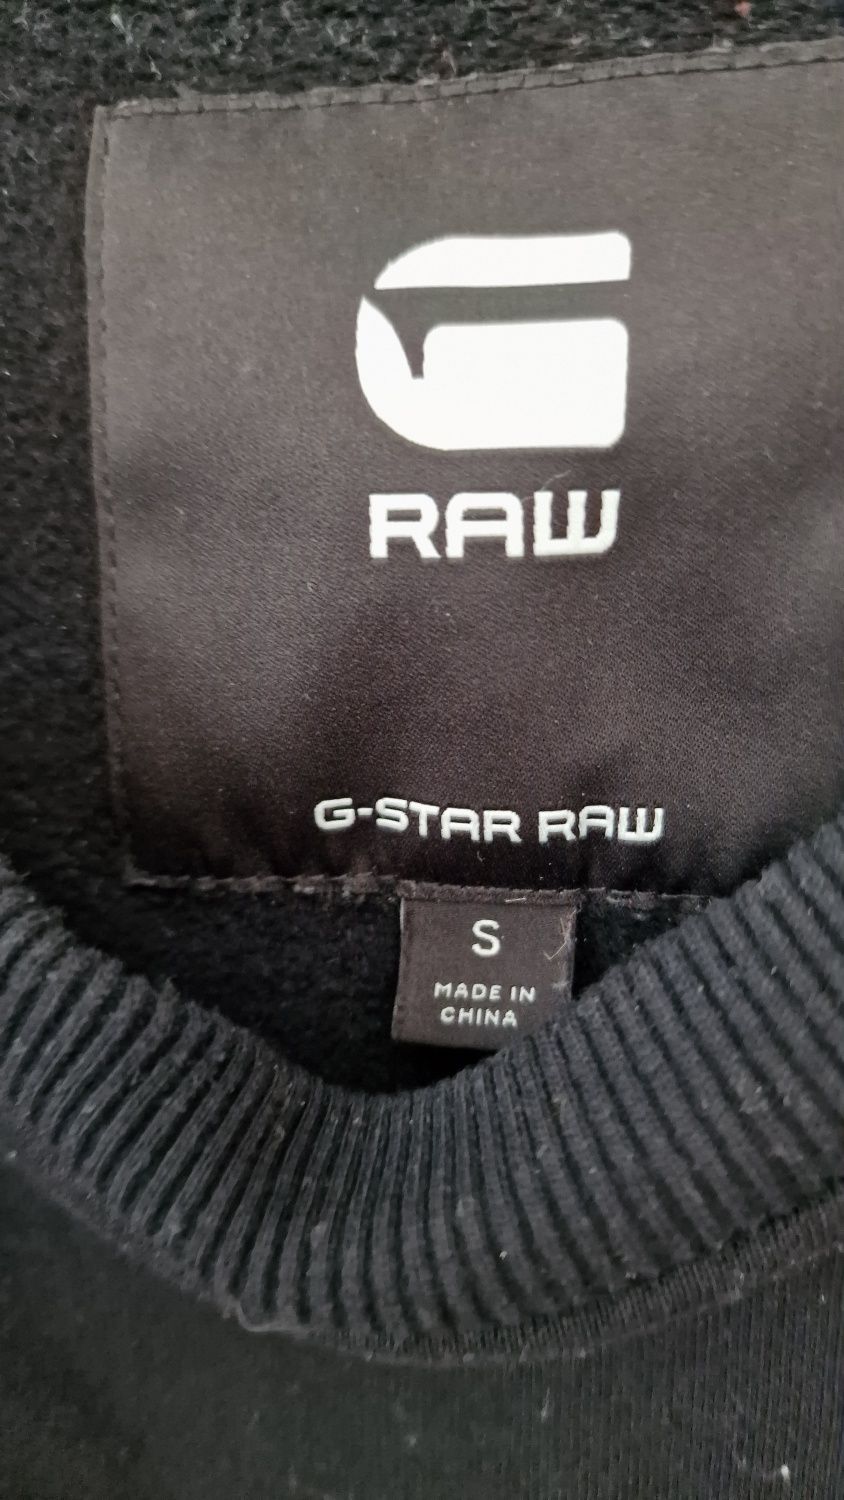 Piękna bluza gstar Raw
Długość całkowita 67cm
Szerokość pod pachami 55